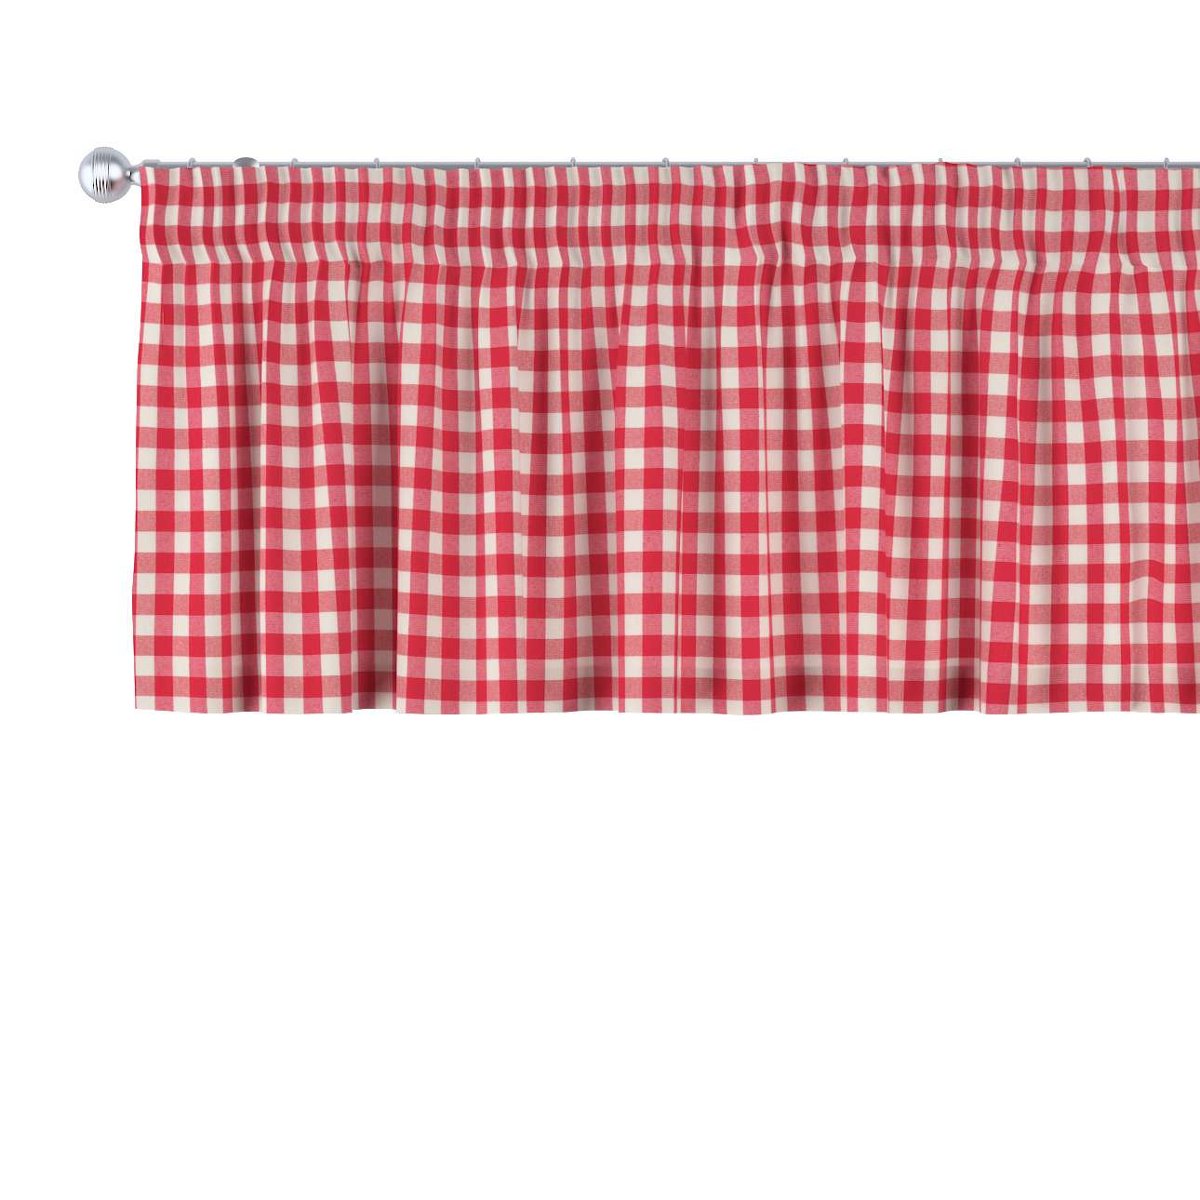 Dekoria Lambrekin na taśmie marszczącej czerwono biała kratka 1,5x1,5cm) 260 × 40 cm Quadro 396-136-16